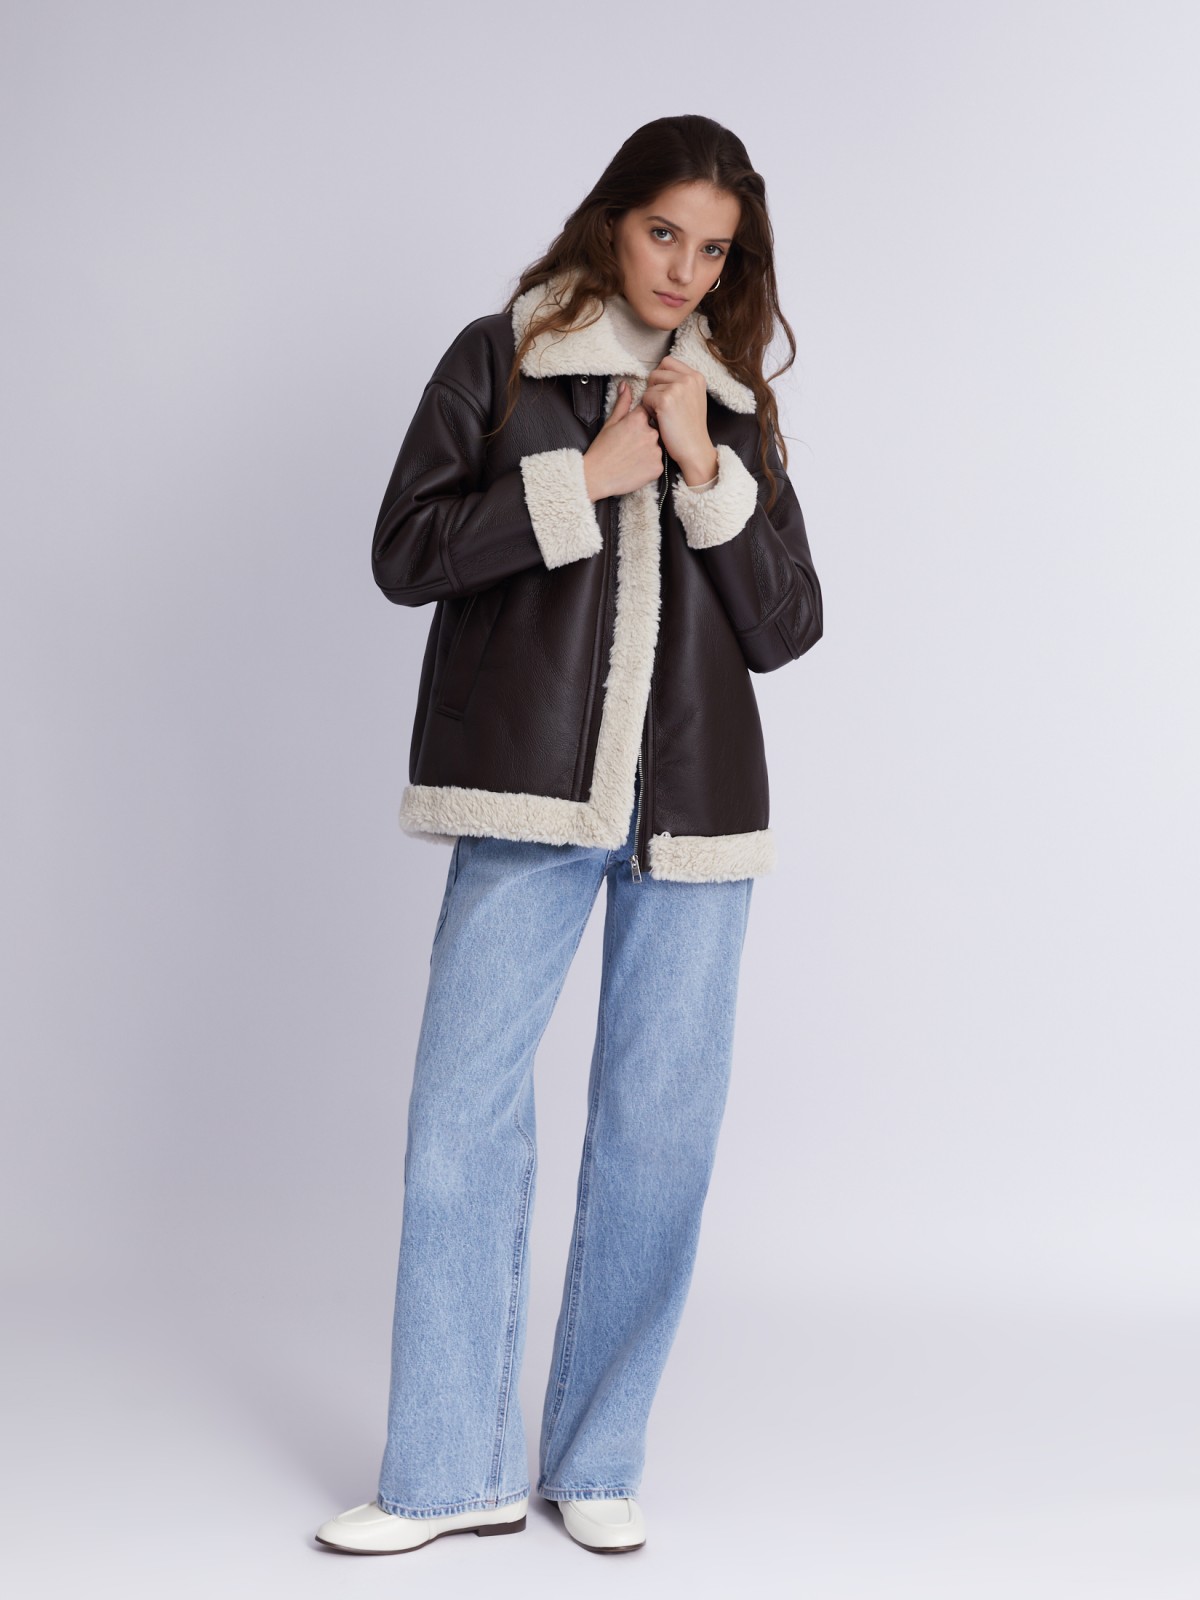 Тёплая куртка-дублёнка из экокожи с искусственным мехом по подкладке zolla 023335550124, цвет коричневый, размер XS - фото 2